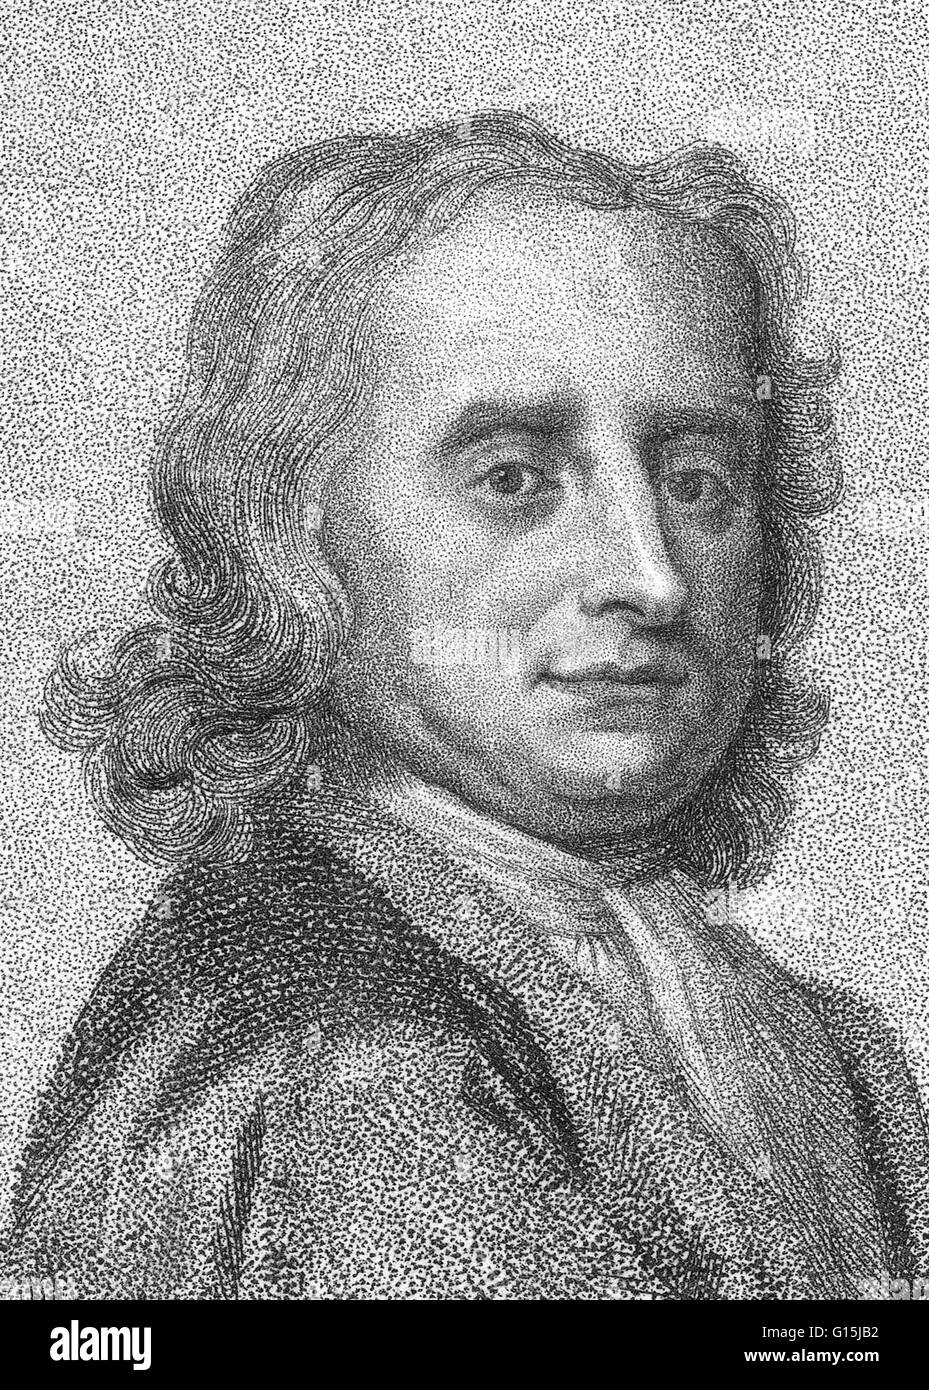 Isaac Newton (25 décembre 1642 - 20 mars 1727) était un physicien, mathématicien, astronome, philosophe naturel, alchimiste, et théologien. Sa monographie Philosophae Naturalis Principia Mathematica, publié en 1687, établit les bases pour m Banque D'Images